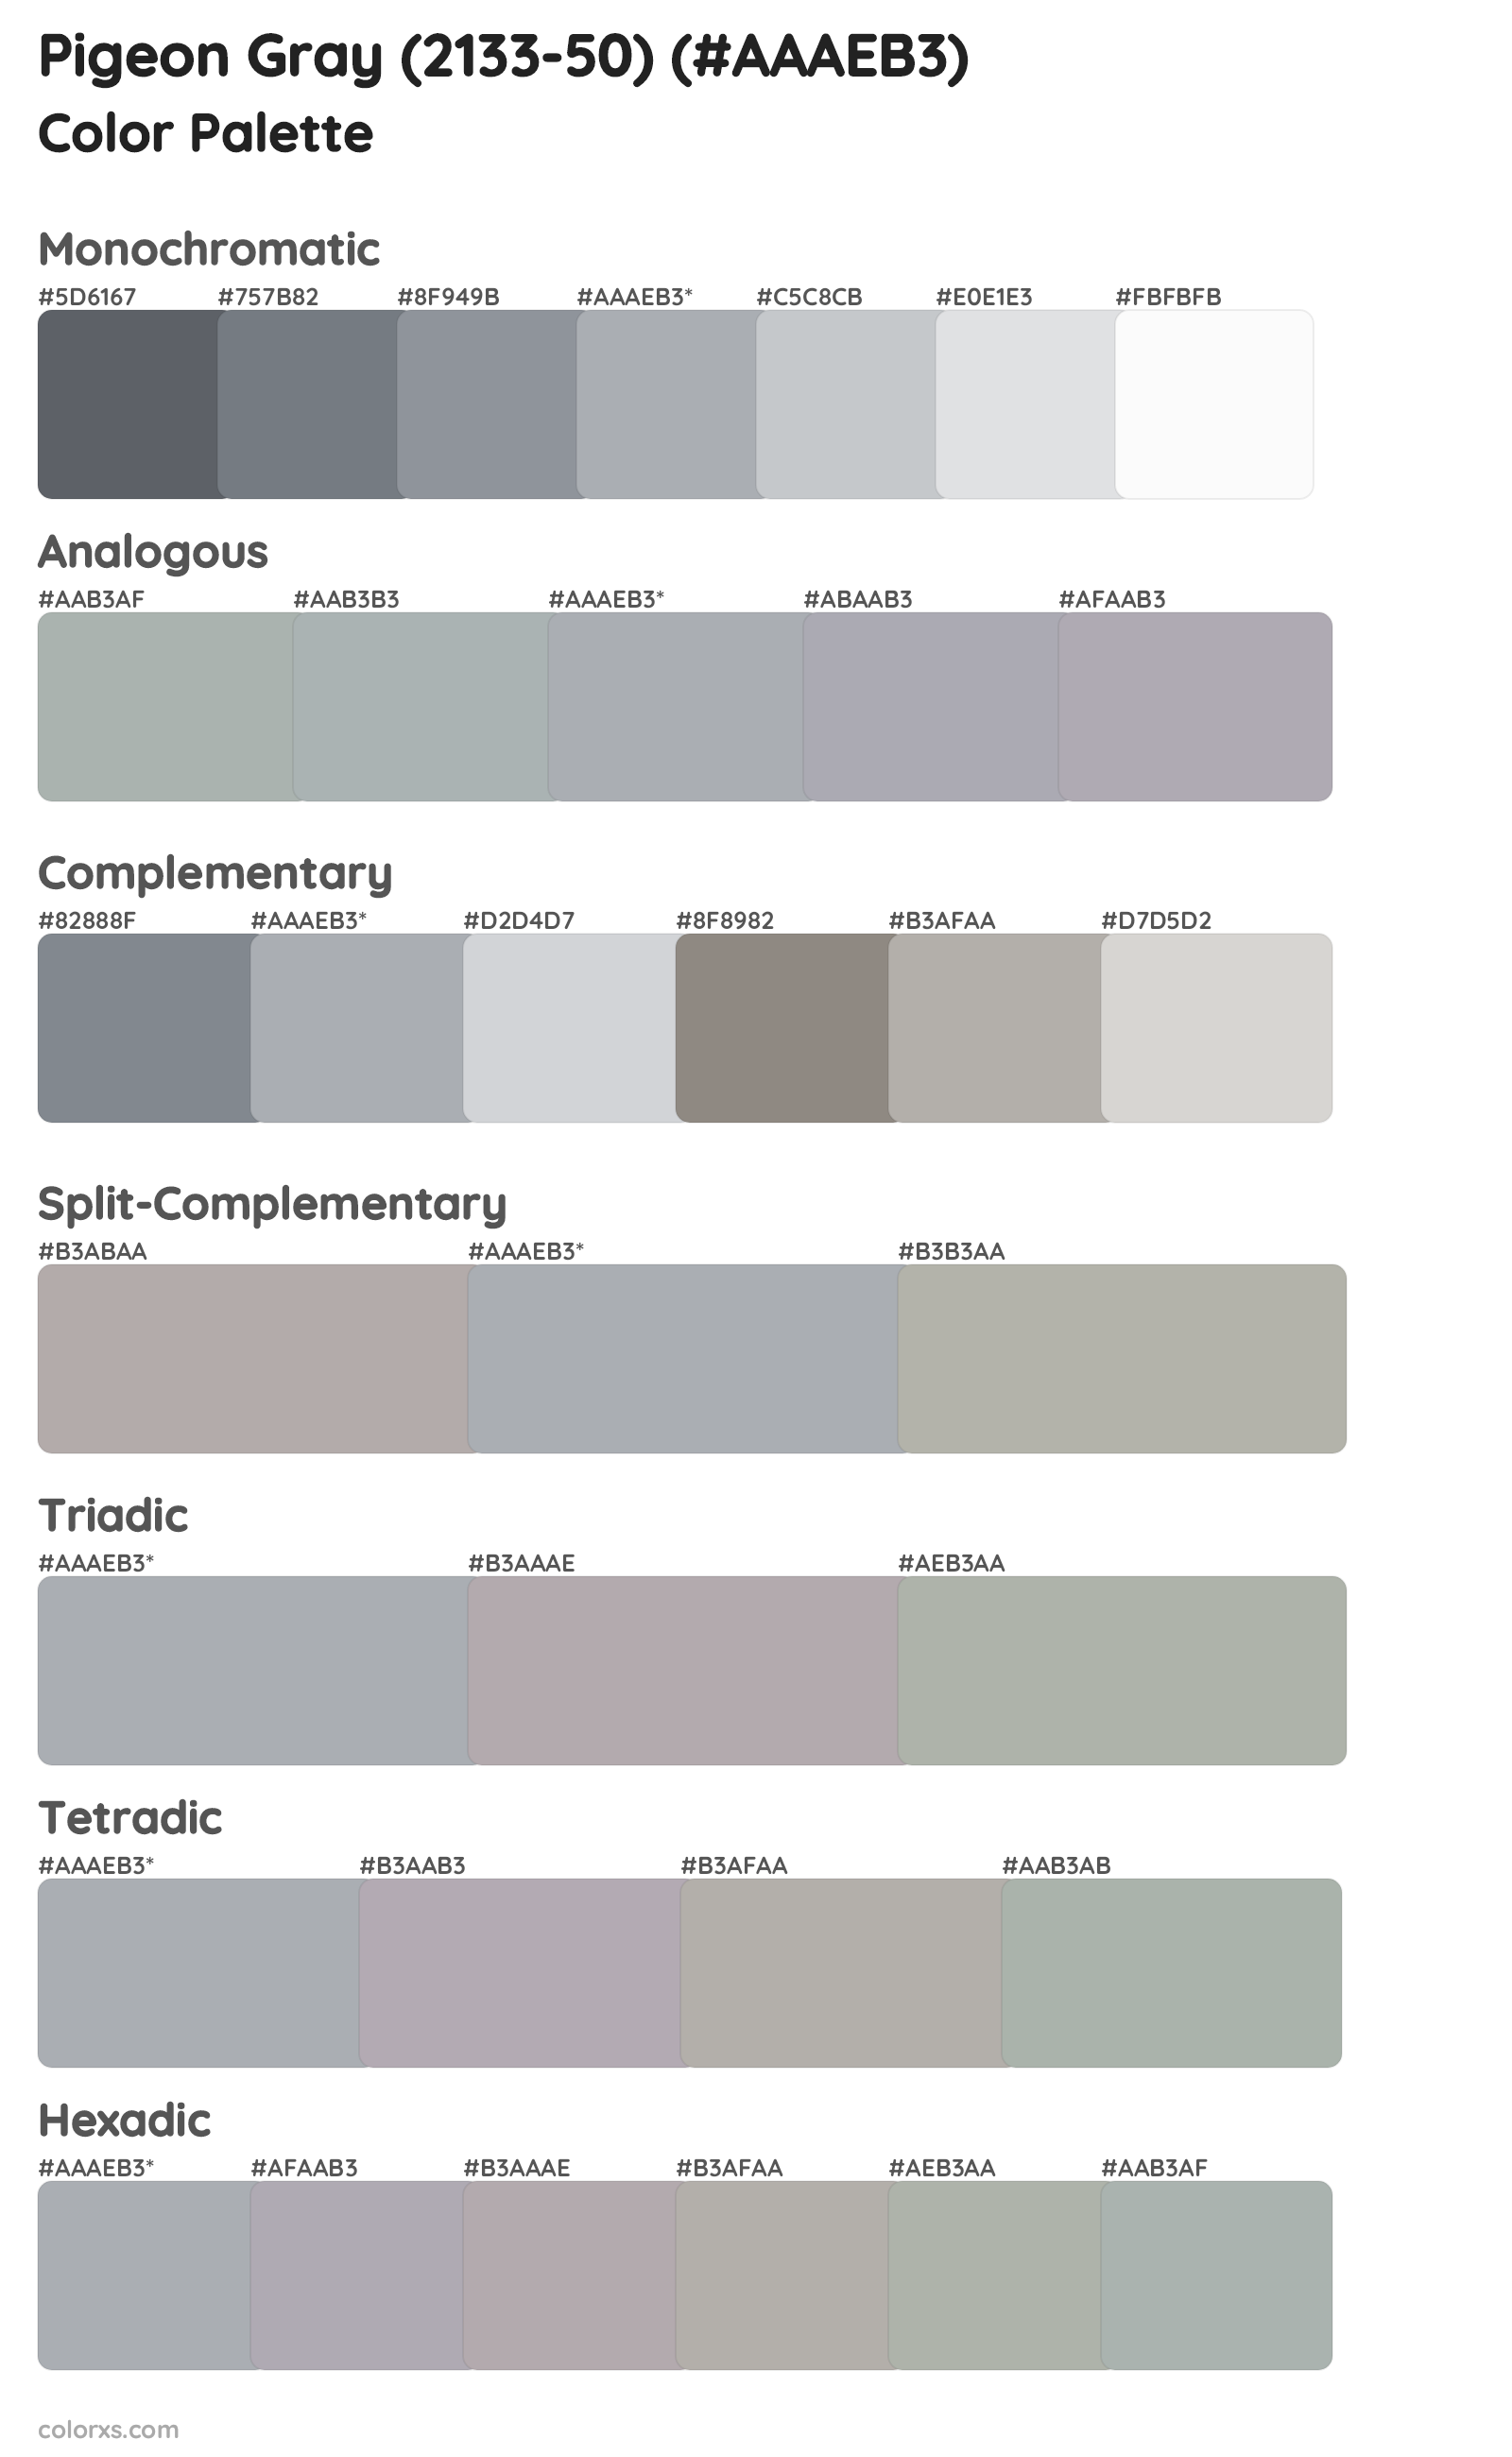 Pigeon Gray (2133-50) Color Scheme Palettes